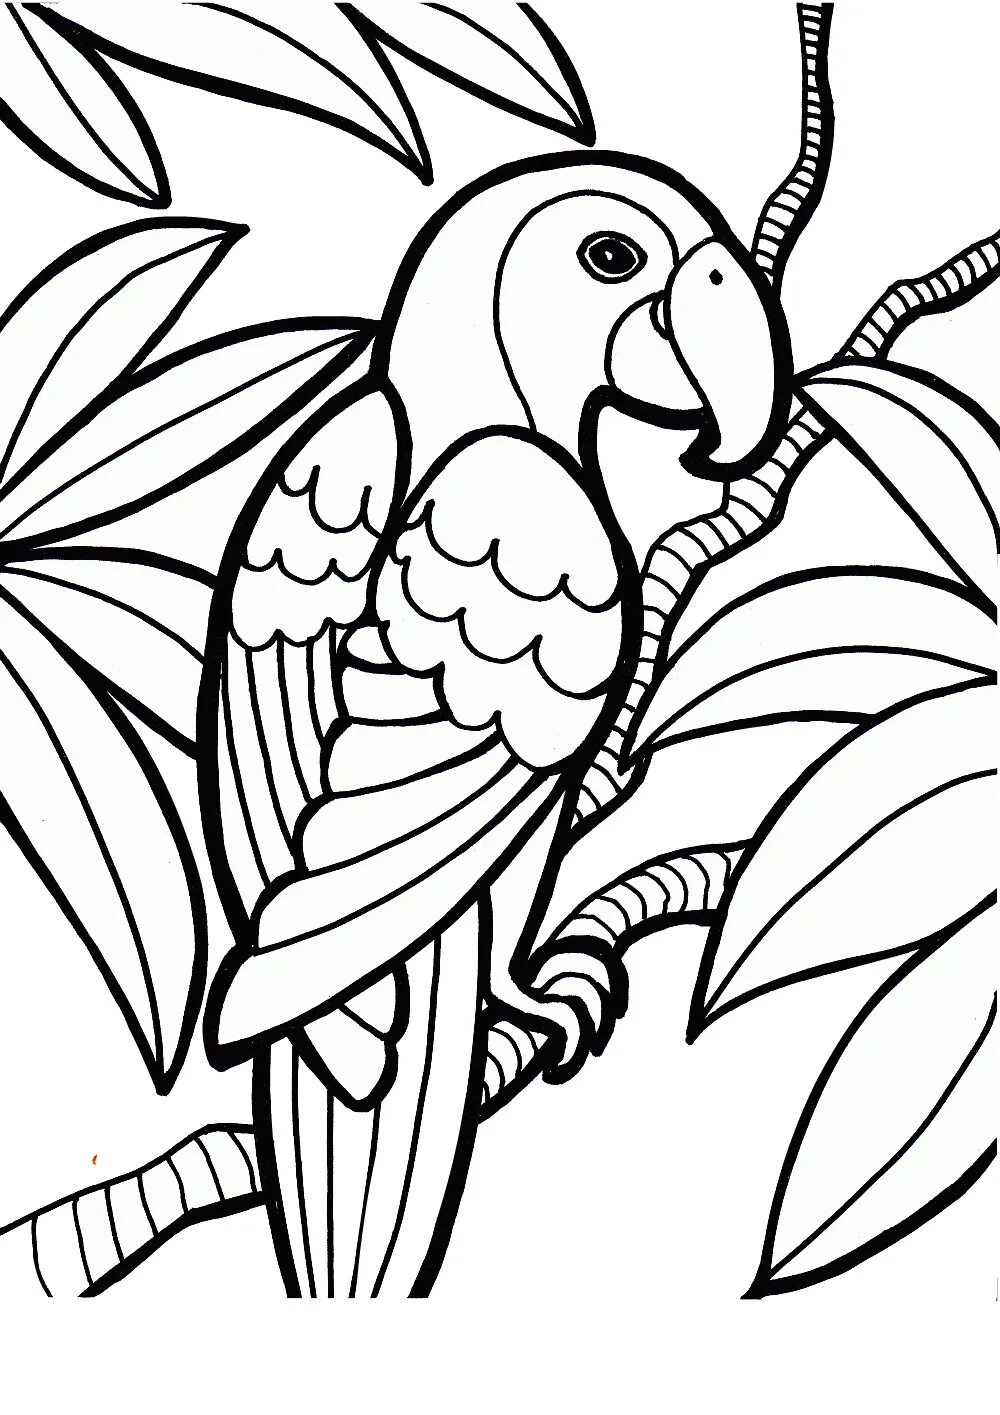 Раскраски контуры распечатать. Ожереловый попугай раскраска. Рисунки для раскрашивания. Рисунки для разукрашивания. Птицы. Раскраска.